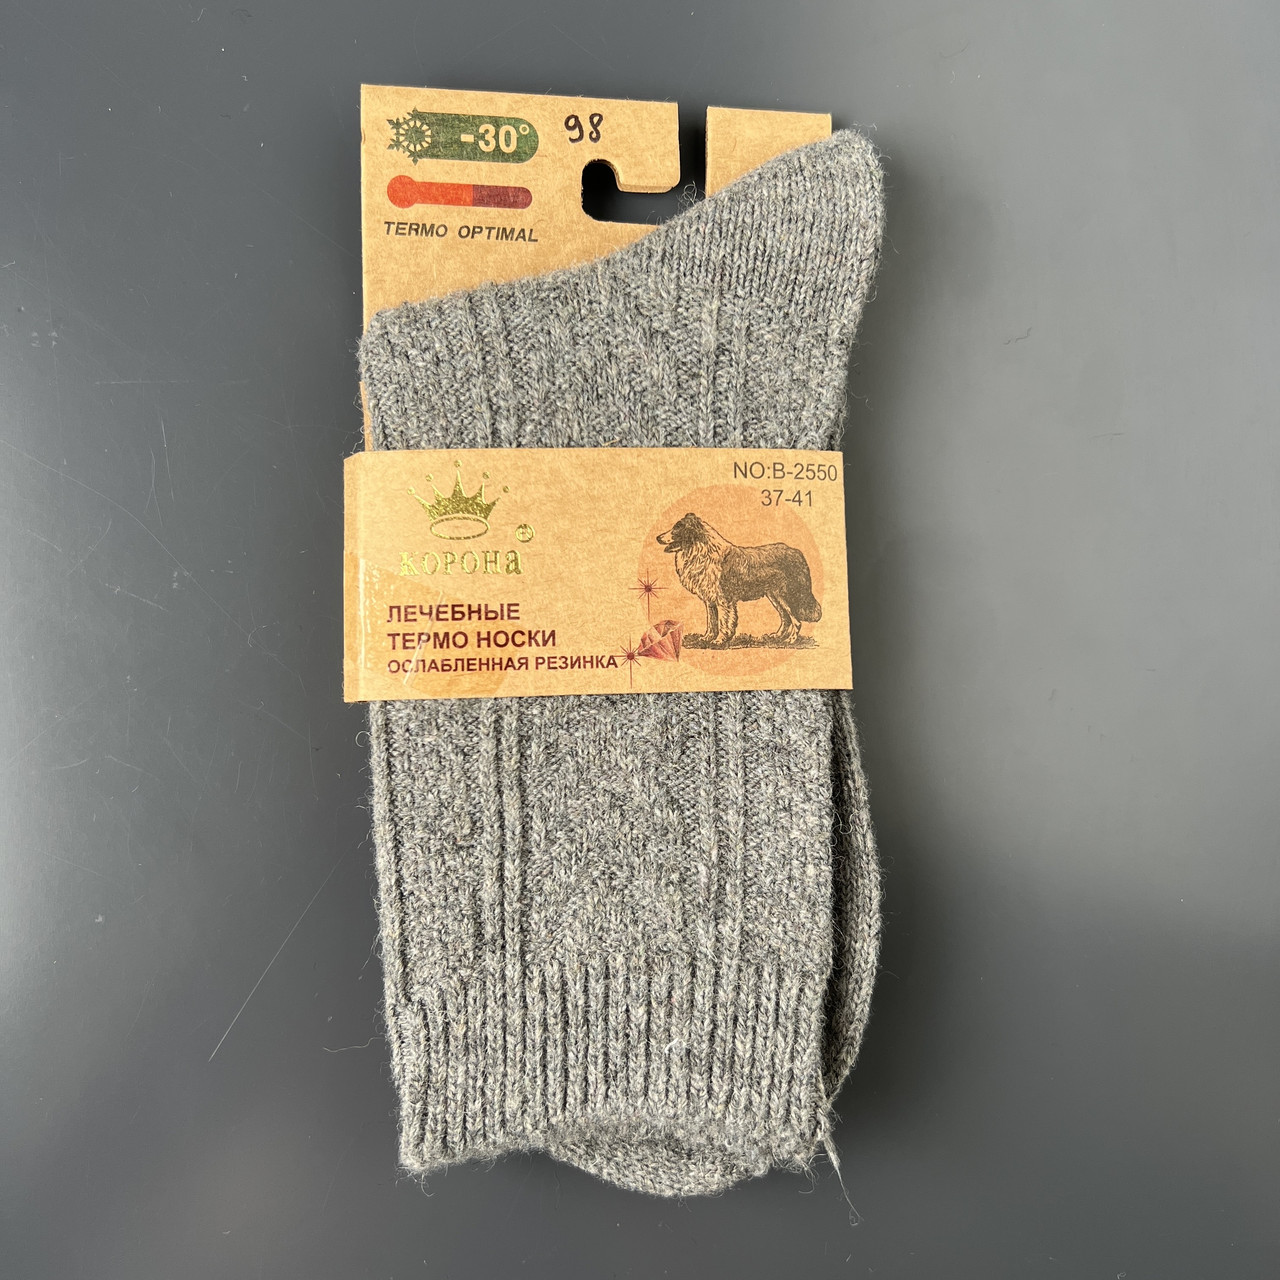 Жіночі термо шкарпетки з верблюжою вовною Корона, розмір 37-41